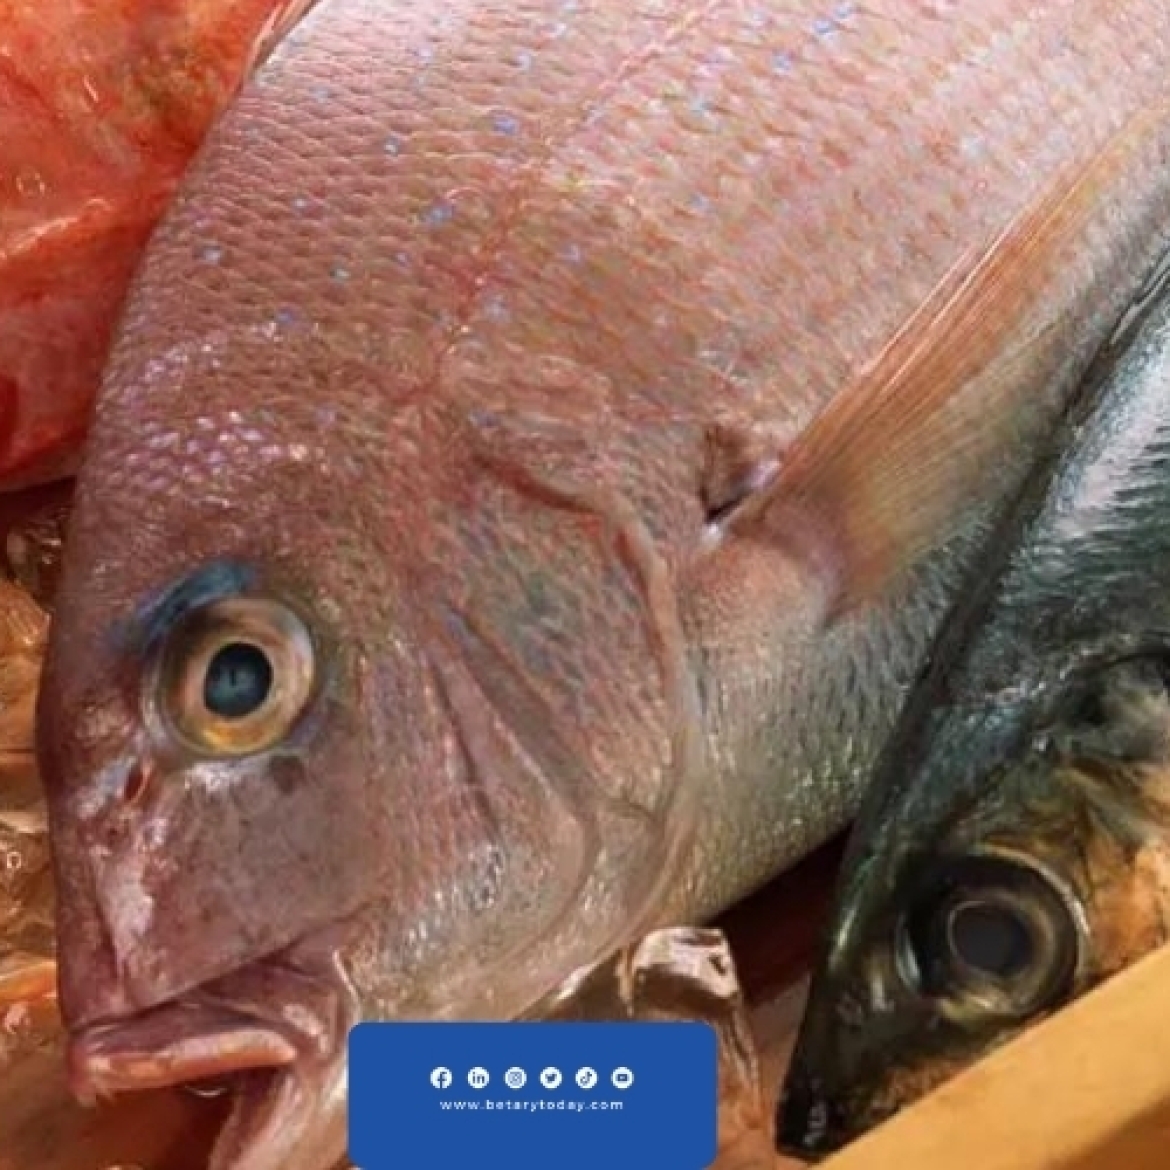 هدوء مؤقت في أسعار الأسماك والمأكولات البحرية اليوم الأربعاء في الأسواق